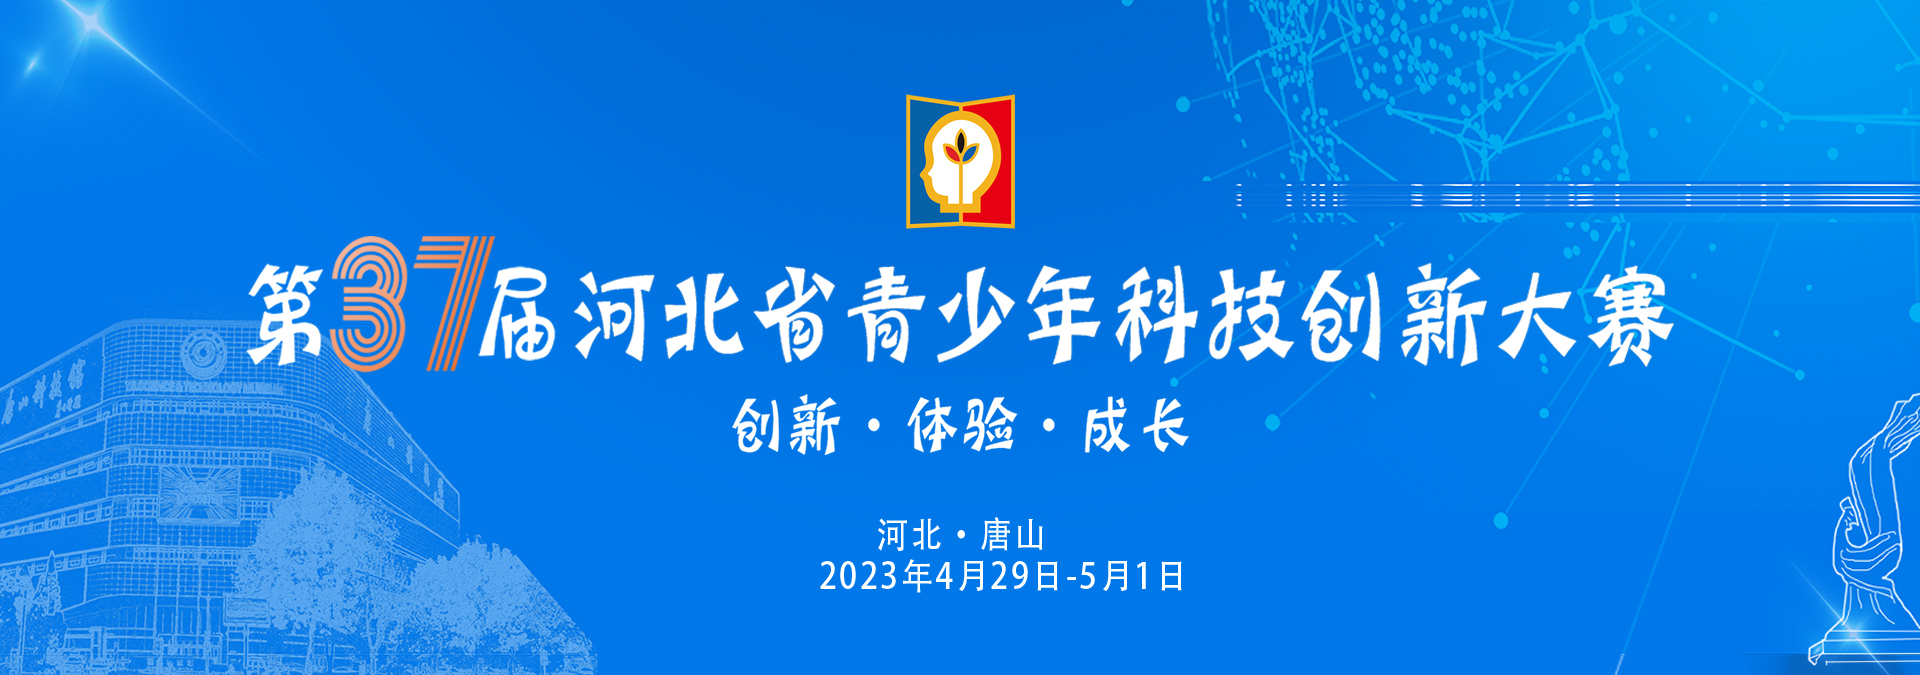 第37屆河北省青少年科技創新大賽展評活動在唐山科技館舉辦